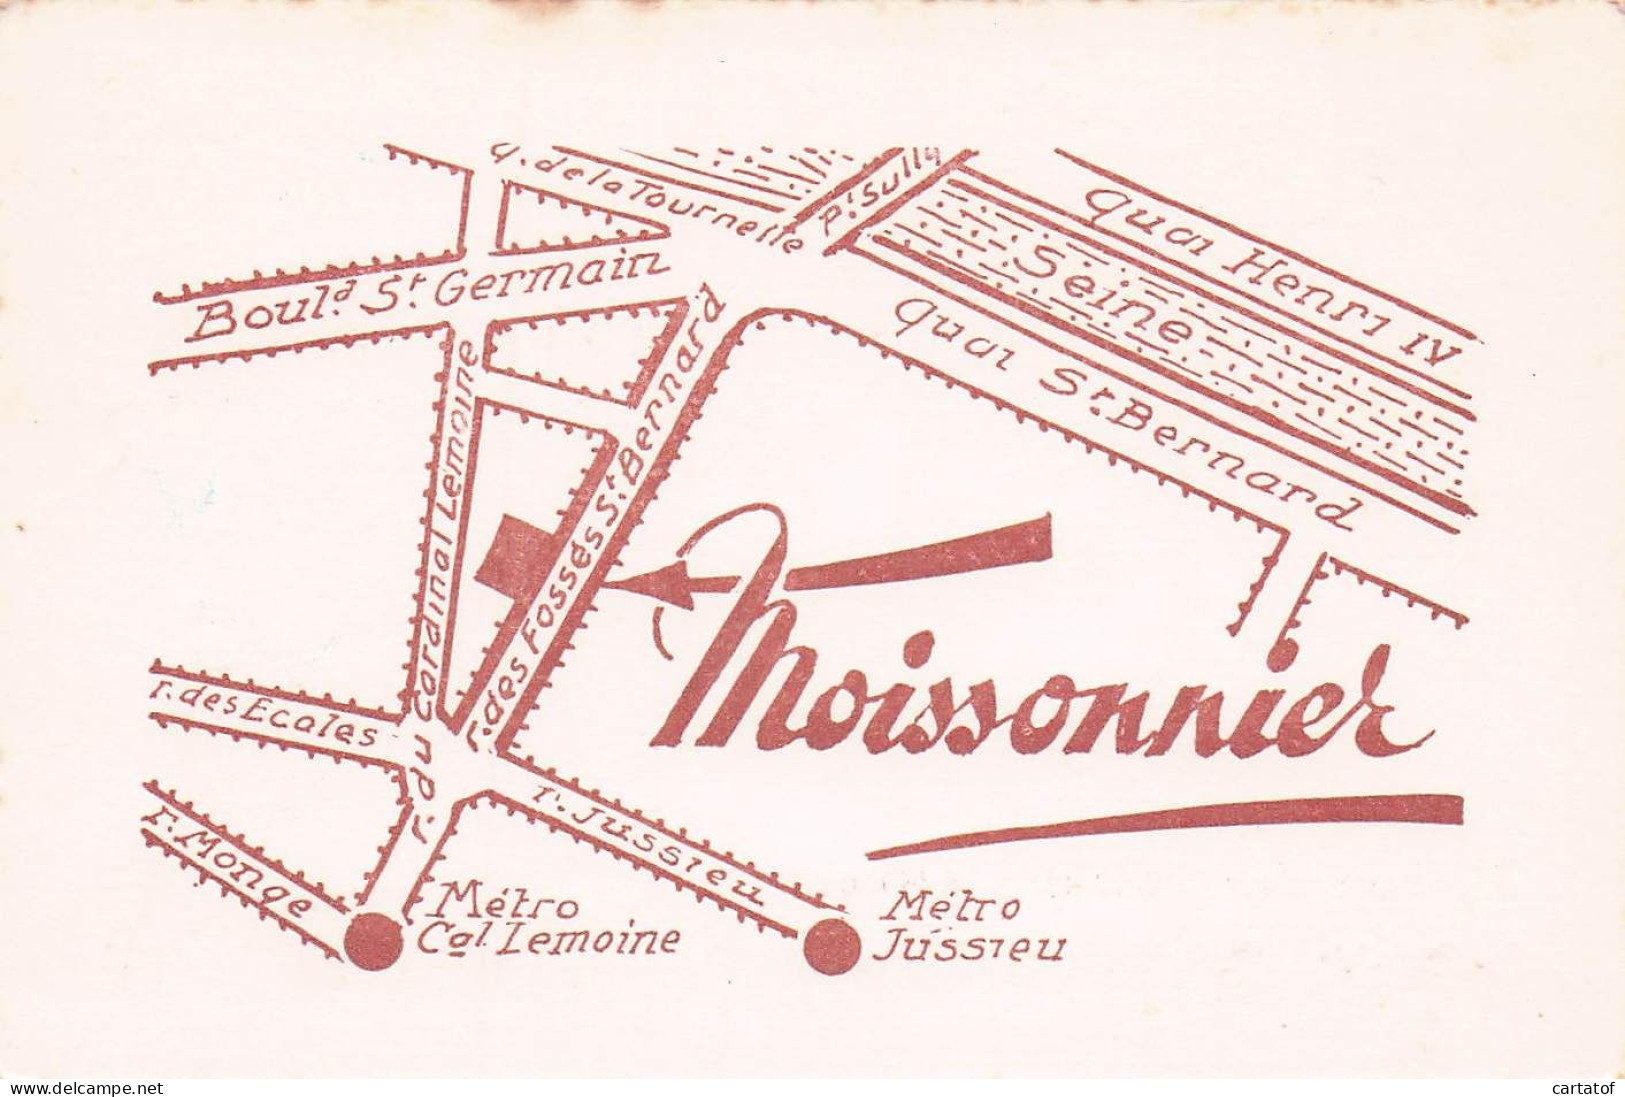 Restaurant MOISSONNIER . PARIS Ve . - Cartas De Hotels